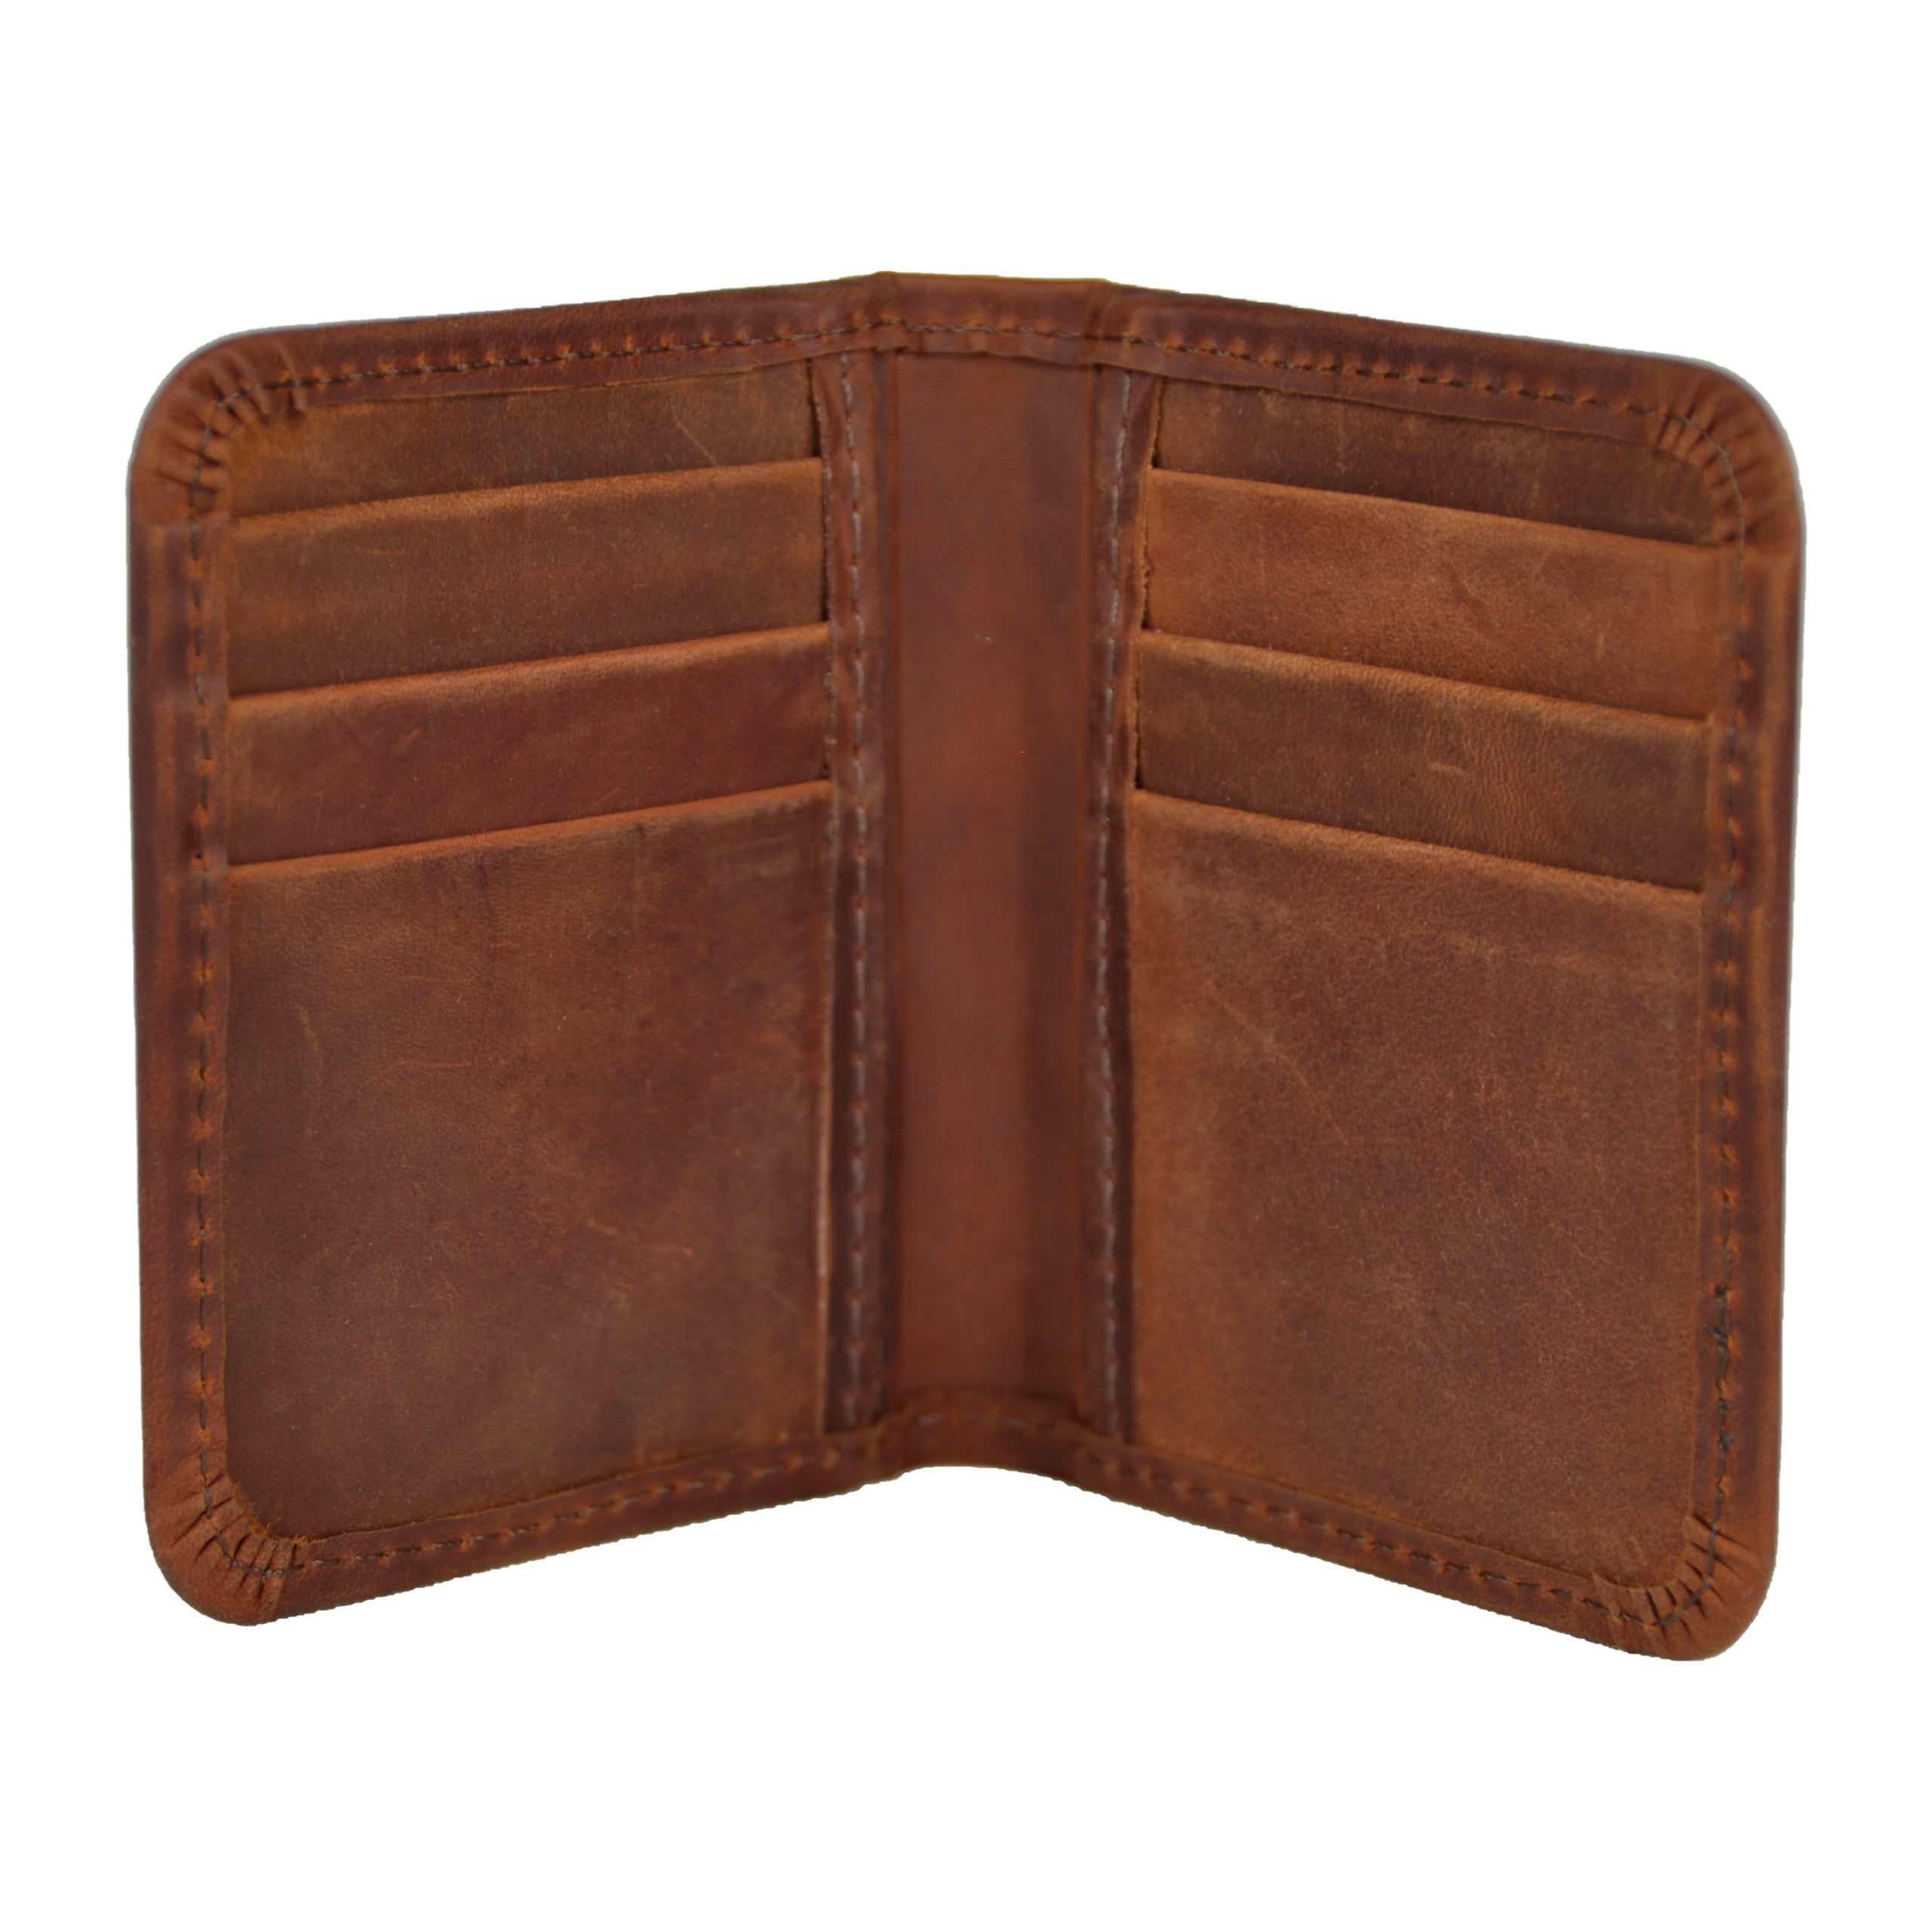 Envelope Cardholder - Genuine Leather